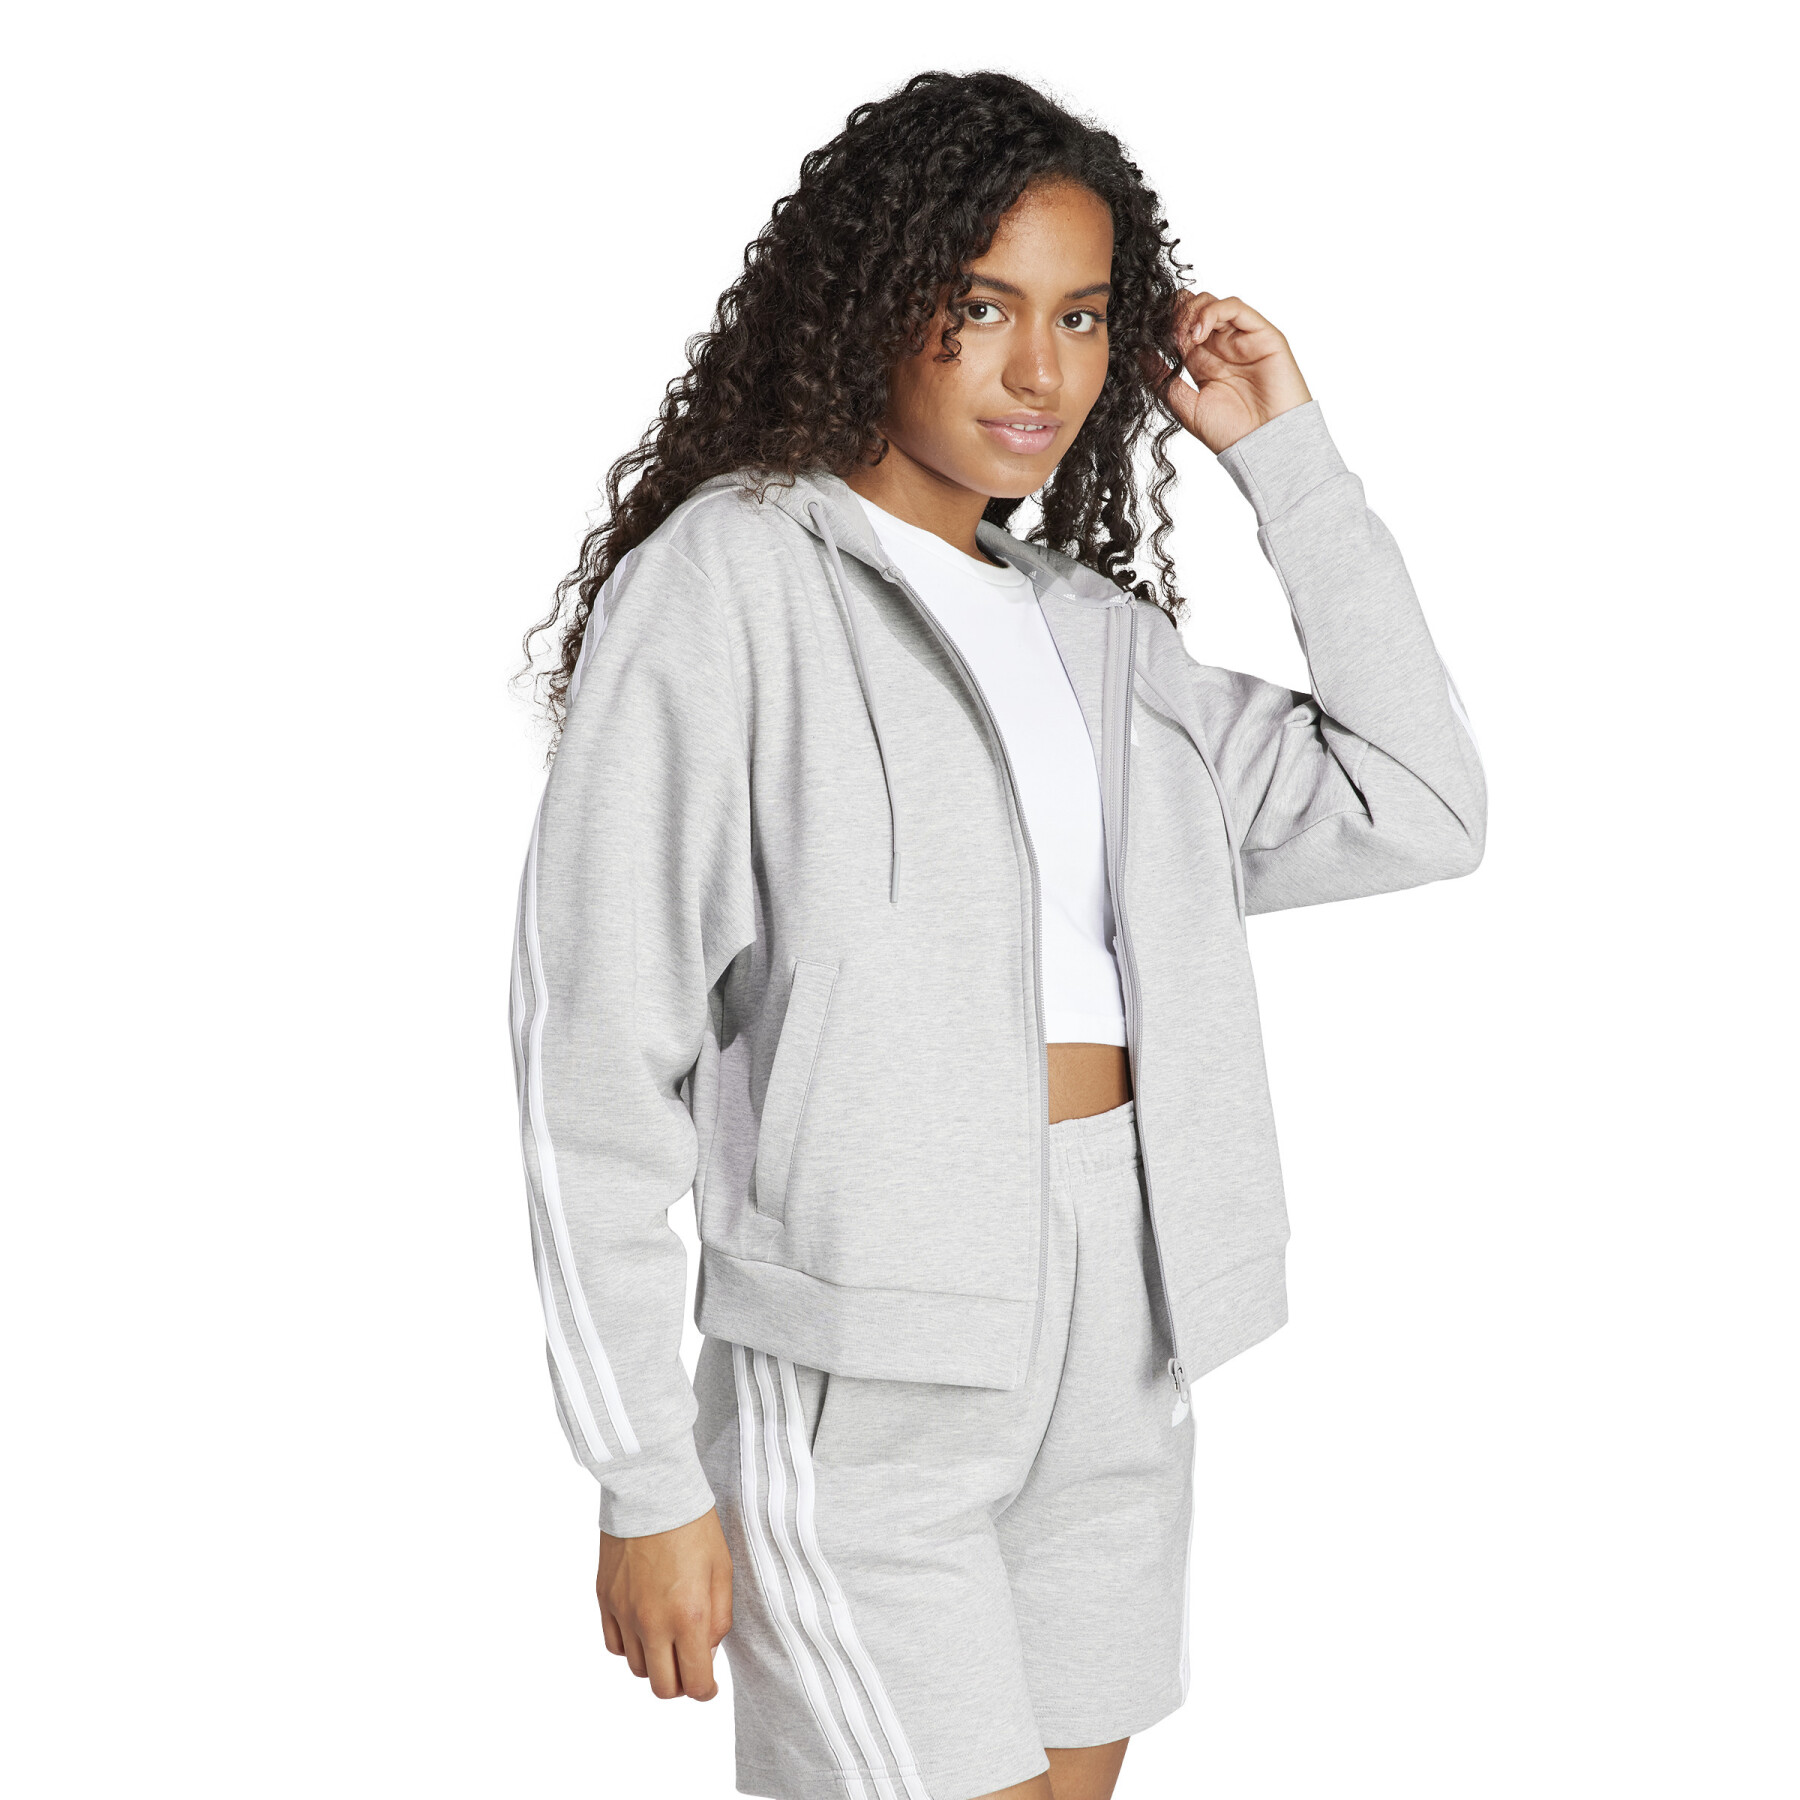 Sweatshirt à capuche zippé femme adidas Future Icons 3 Stripes